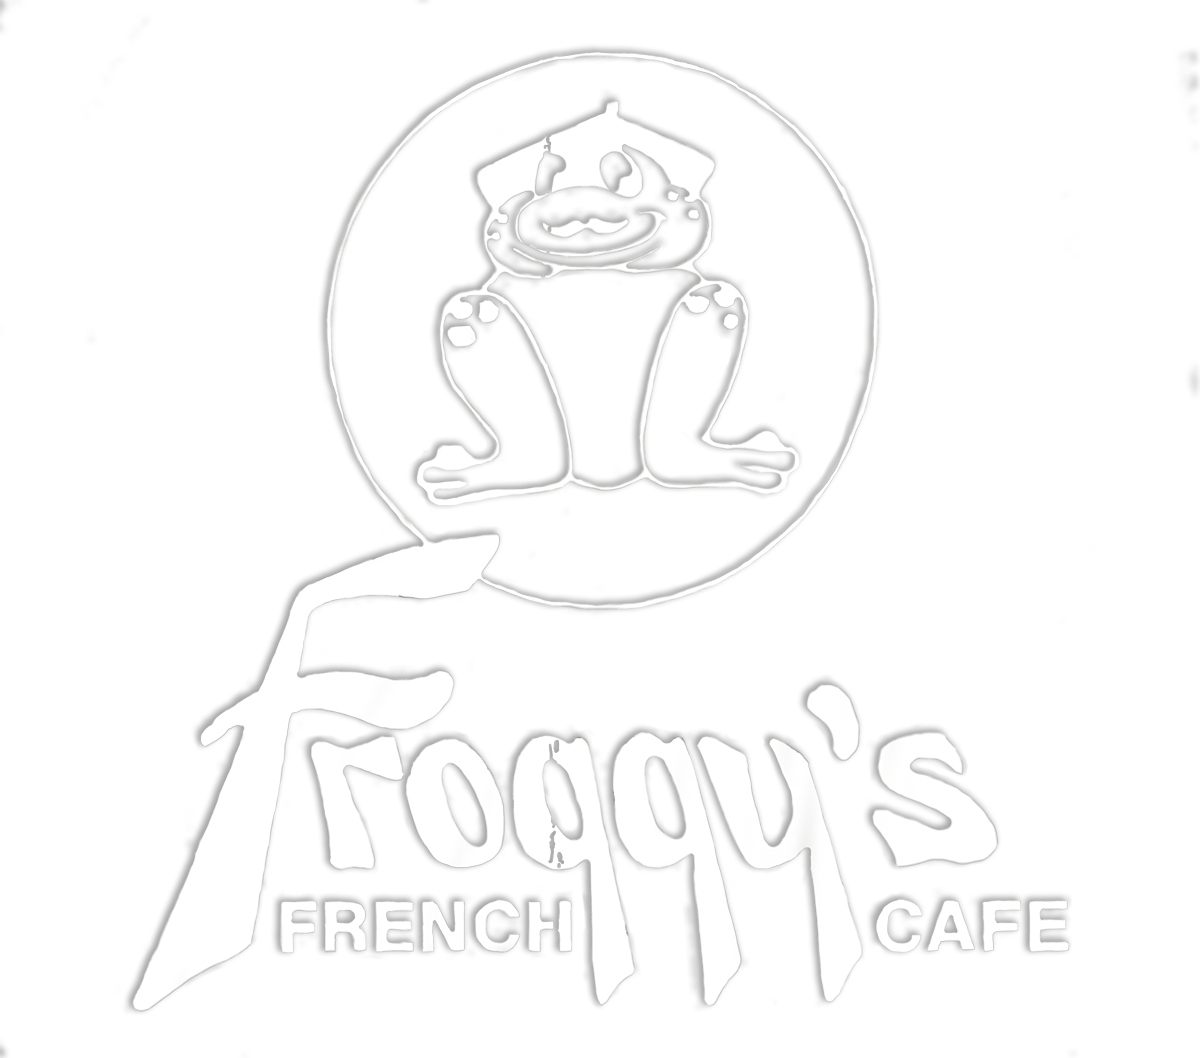 Froggy's French Café